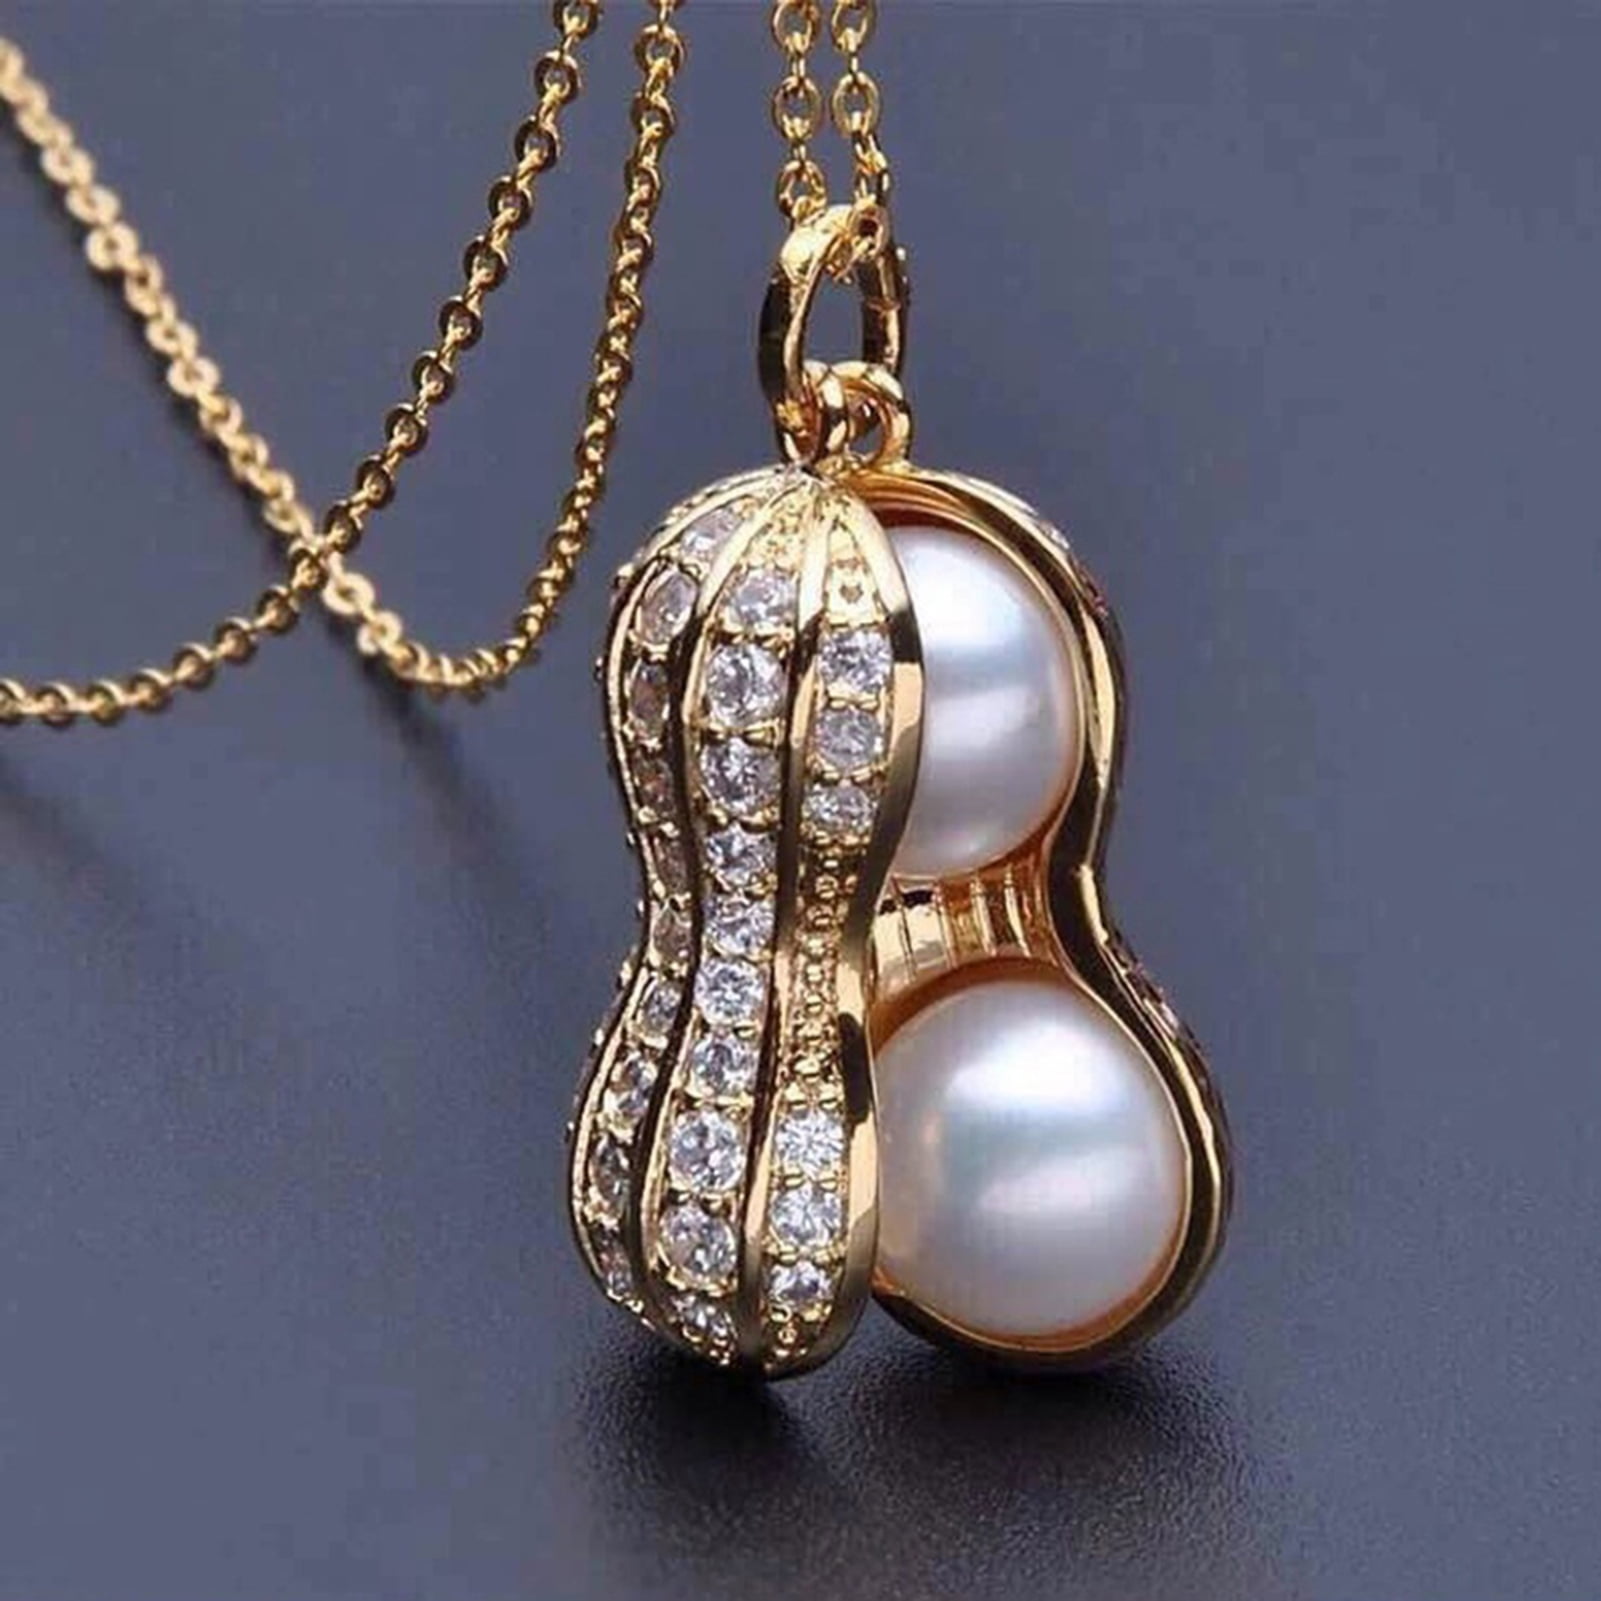 Ayyufe Necklace Elegant Appearance Shiny Rhinestone 2 Colors Peanut Pendant Necklace For Evening Walmart Com